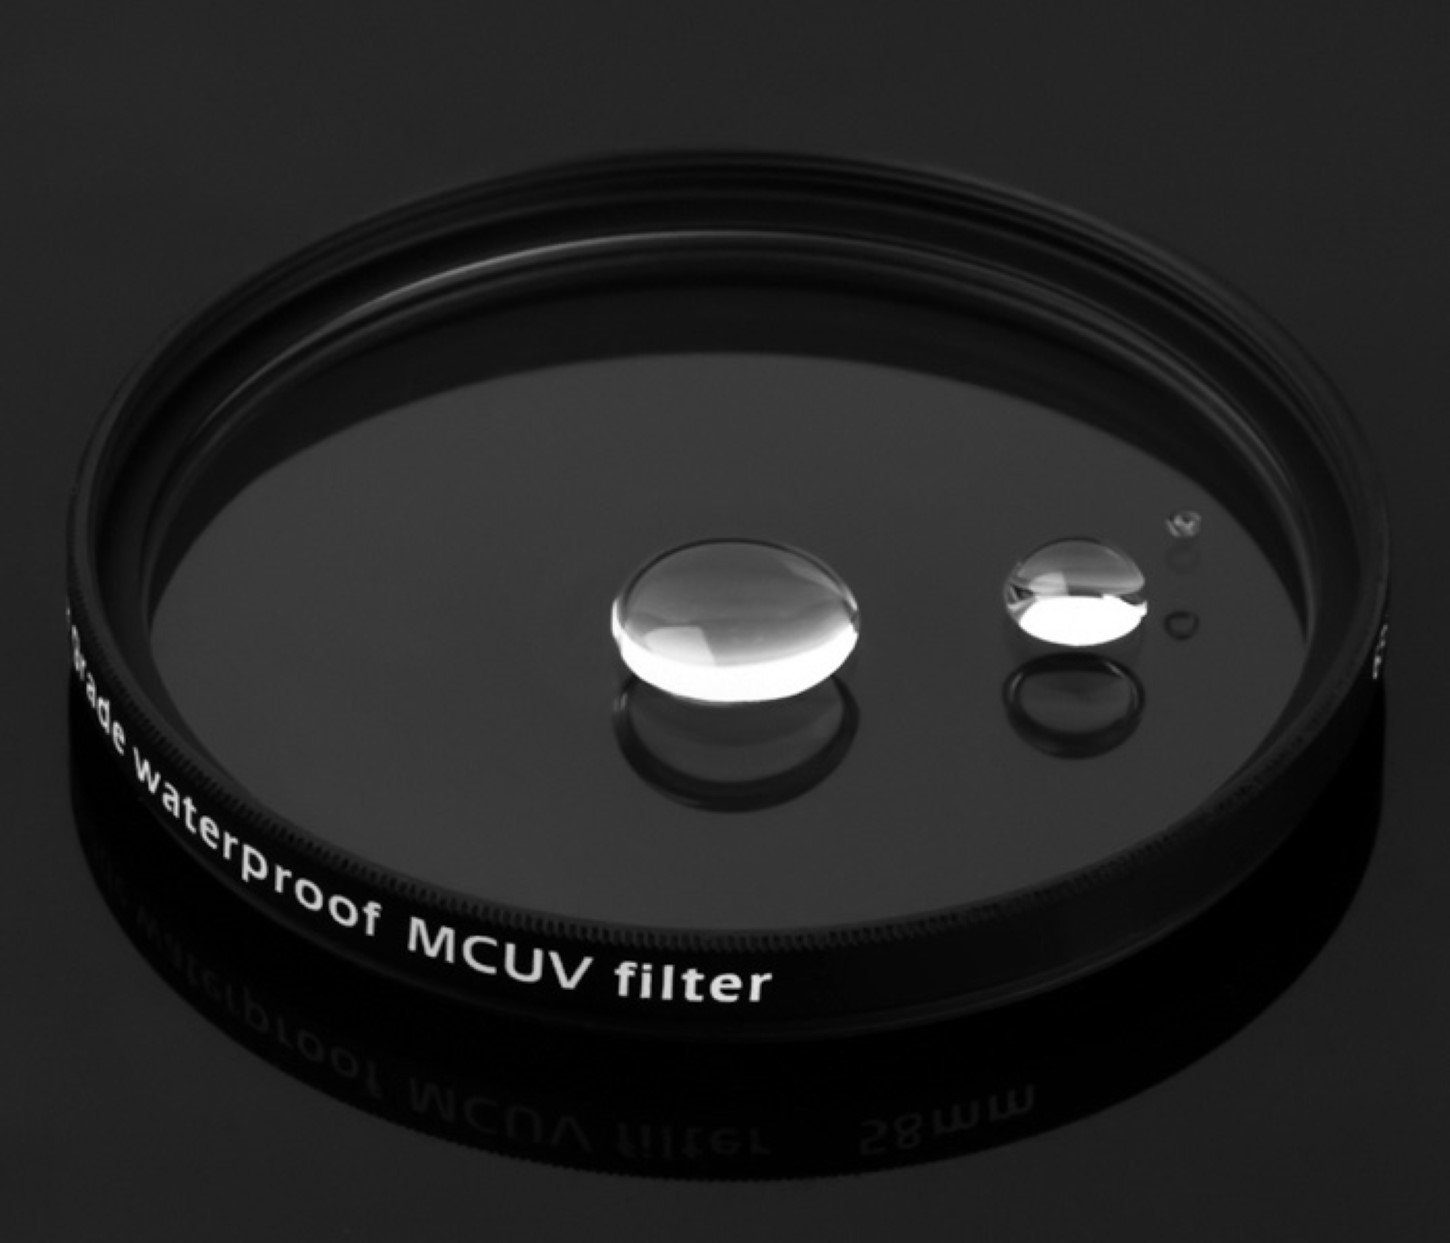 Pixel Multicoated UV Filter vergütet mm 62 wasserfest Foto-UV-Filter